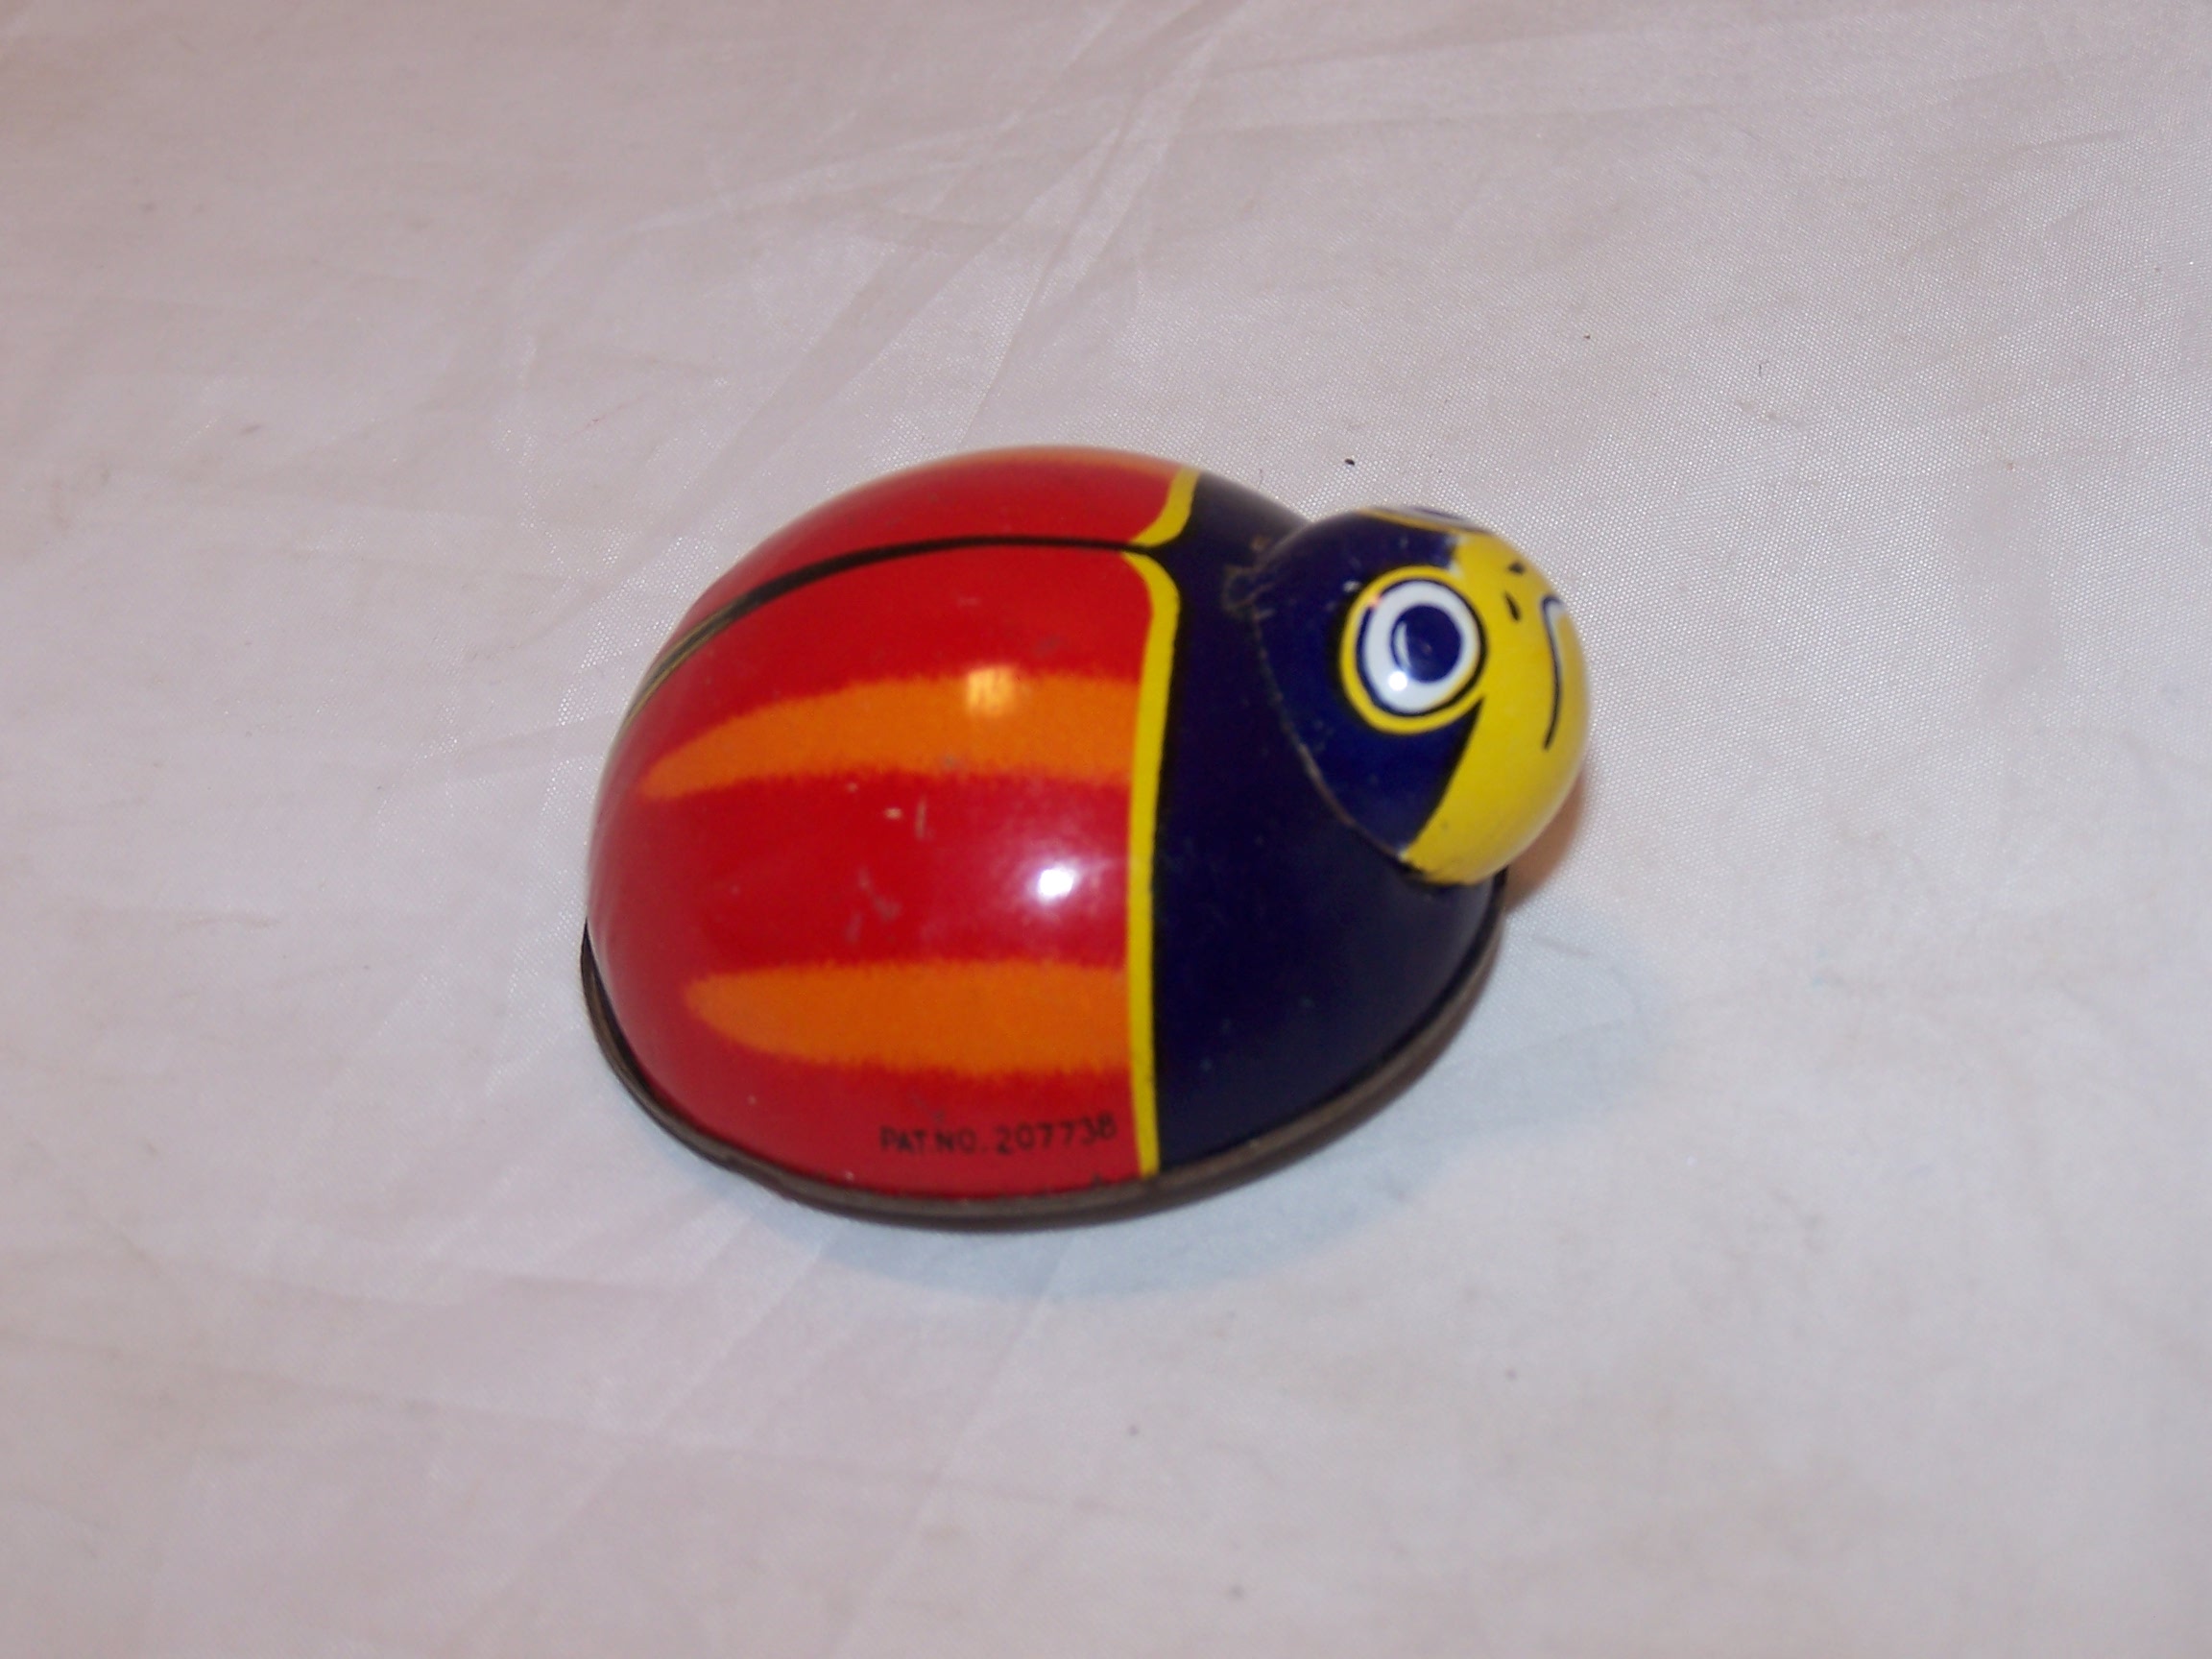 Image 1 of Tin Ladybug Toy, Vintage, Japan